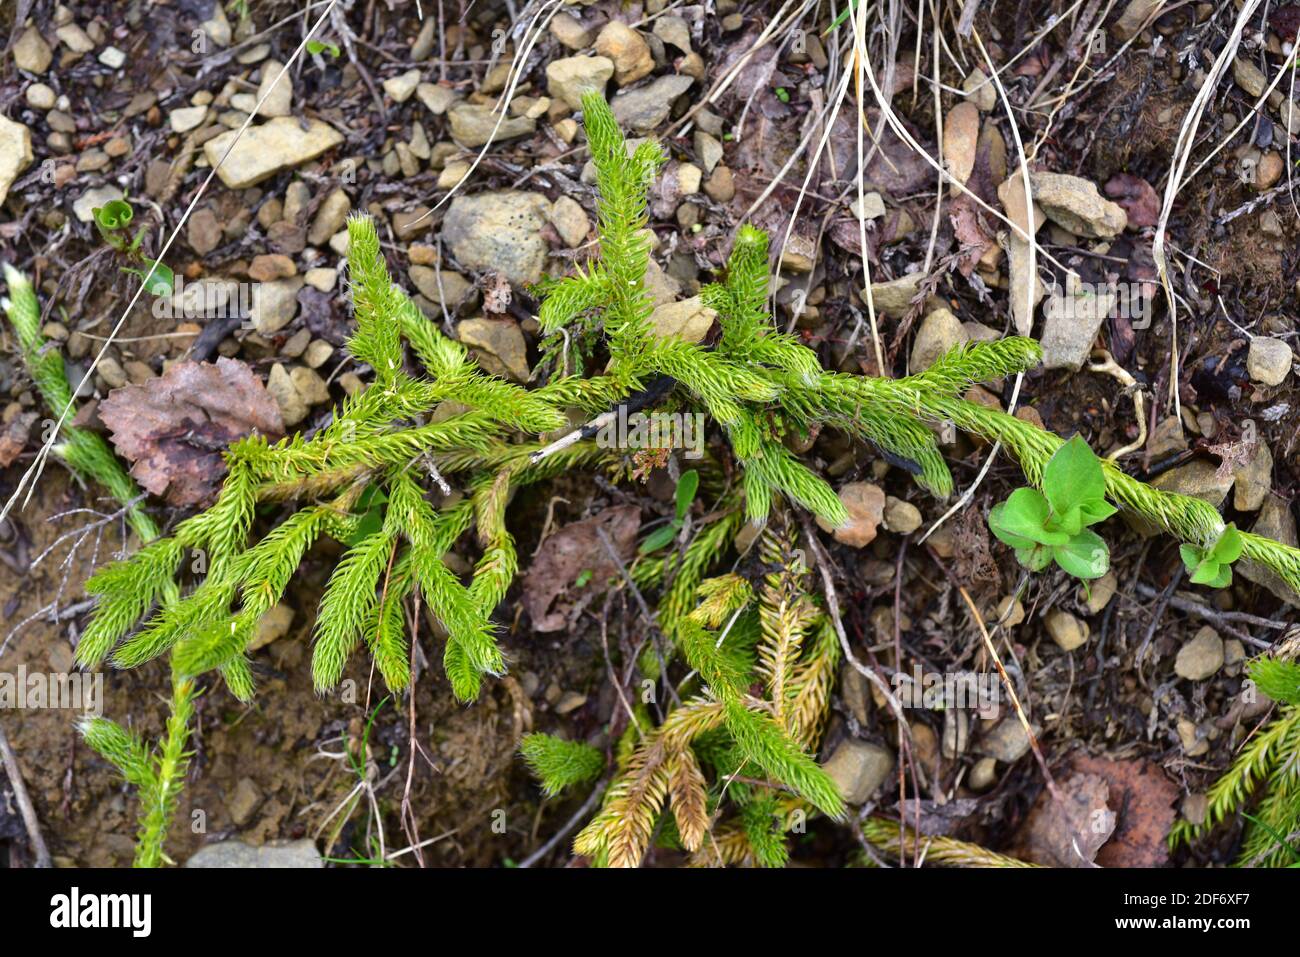 El musgo o pino montículo (Lycopodium clavatum) es una planta vascular nativa del hemisferio norte. Esta foto fue tomada en el Parque Natural de Somiedo, Foto de stock